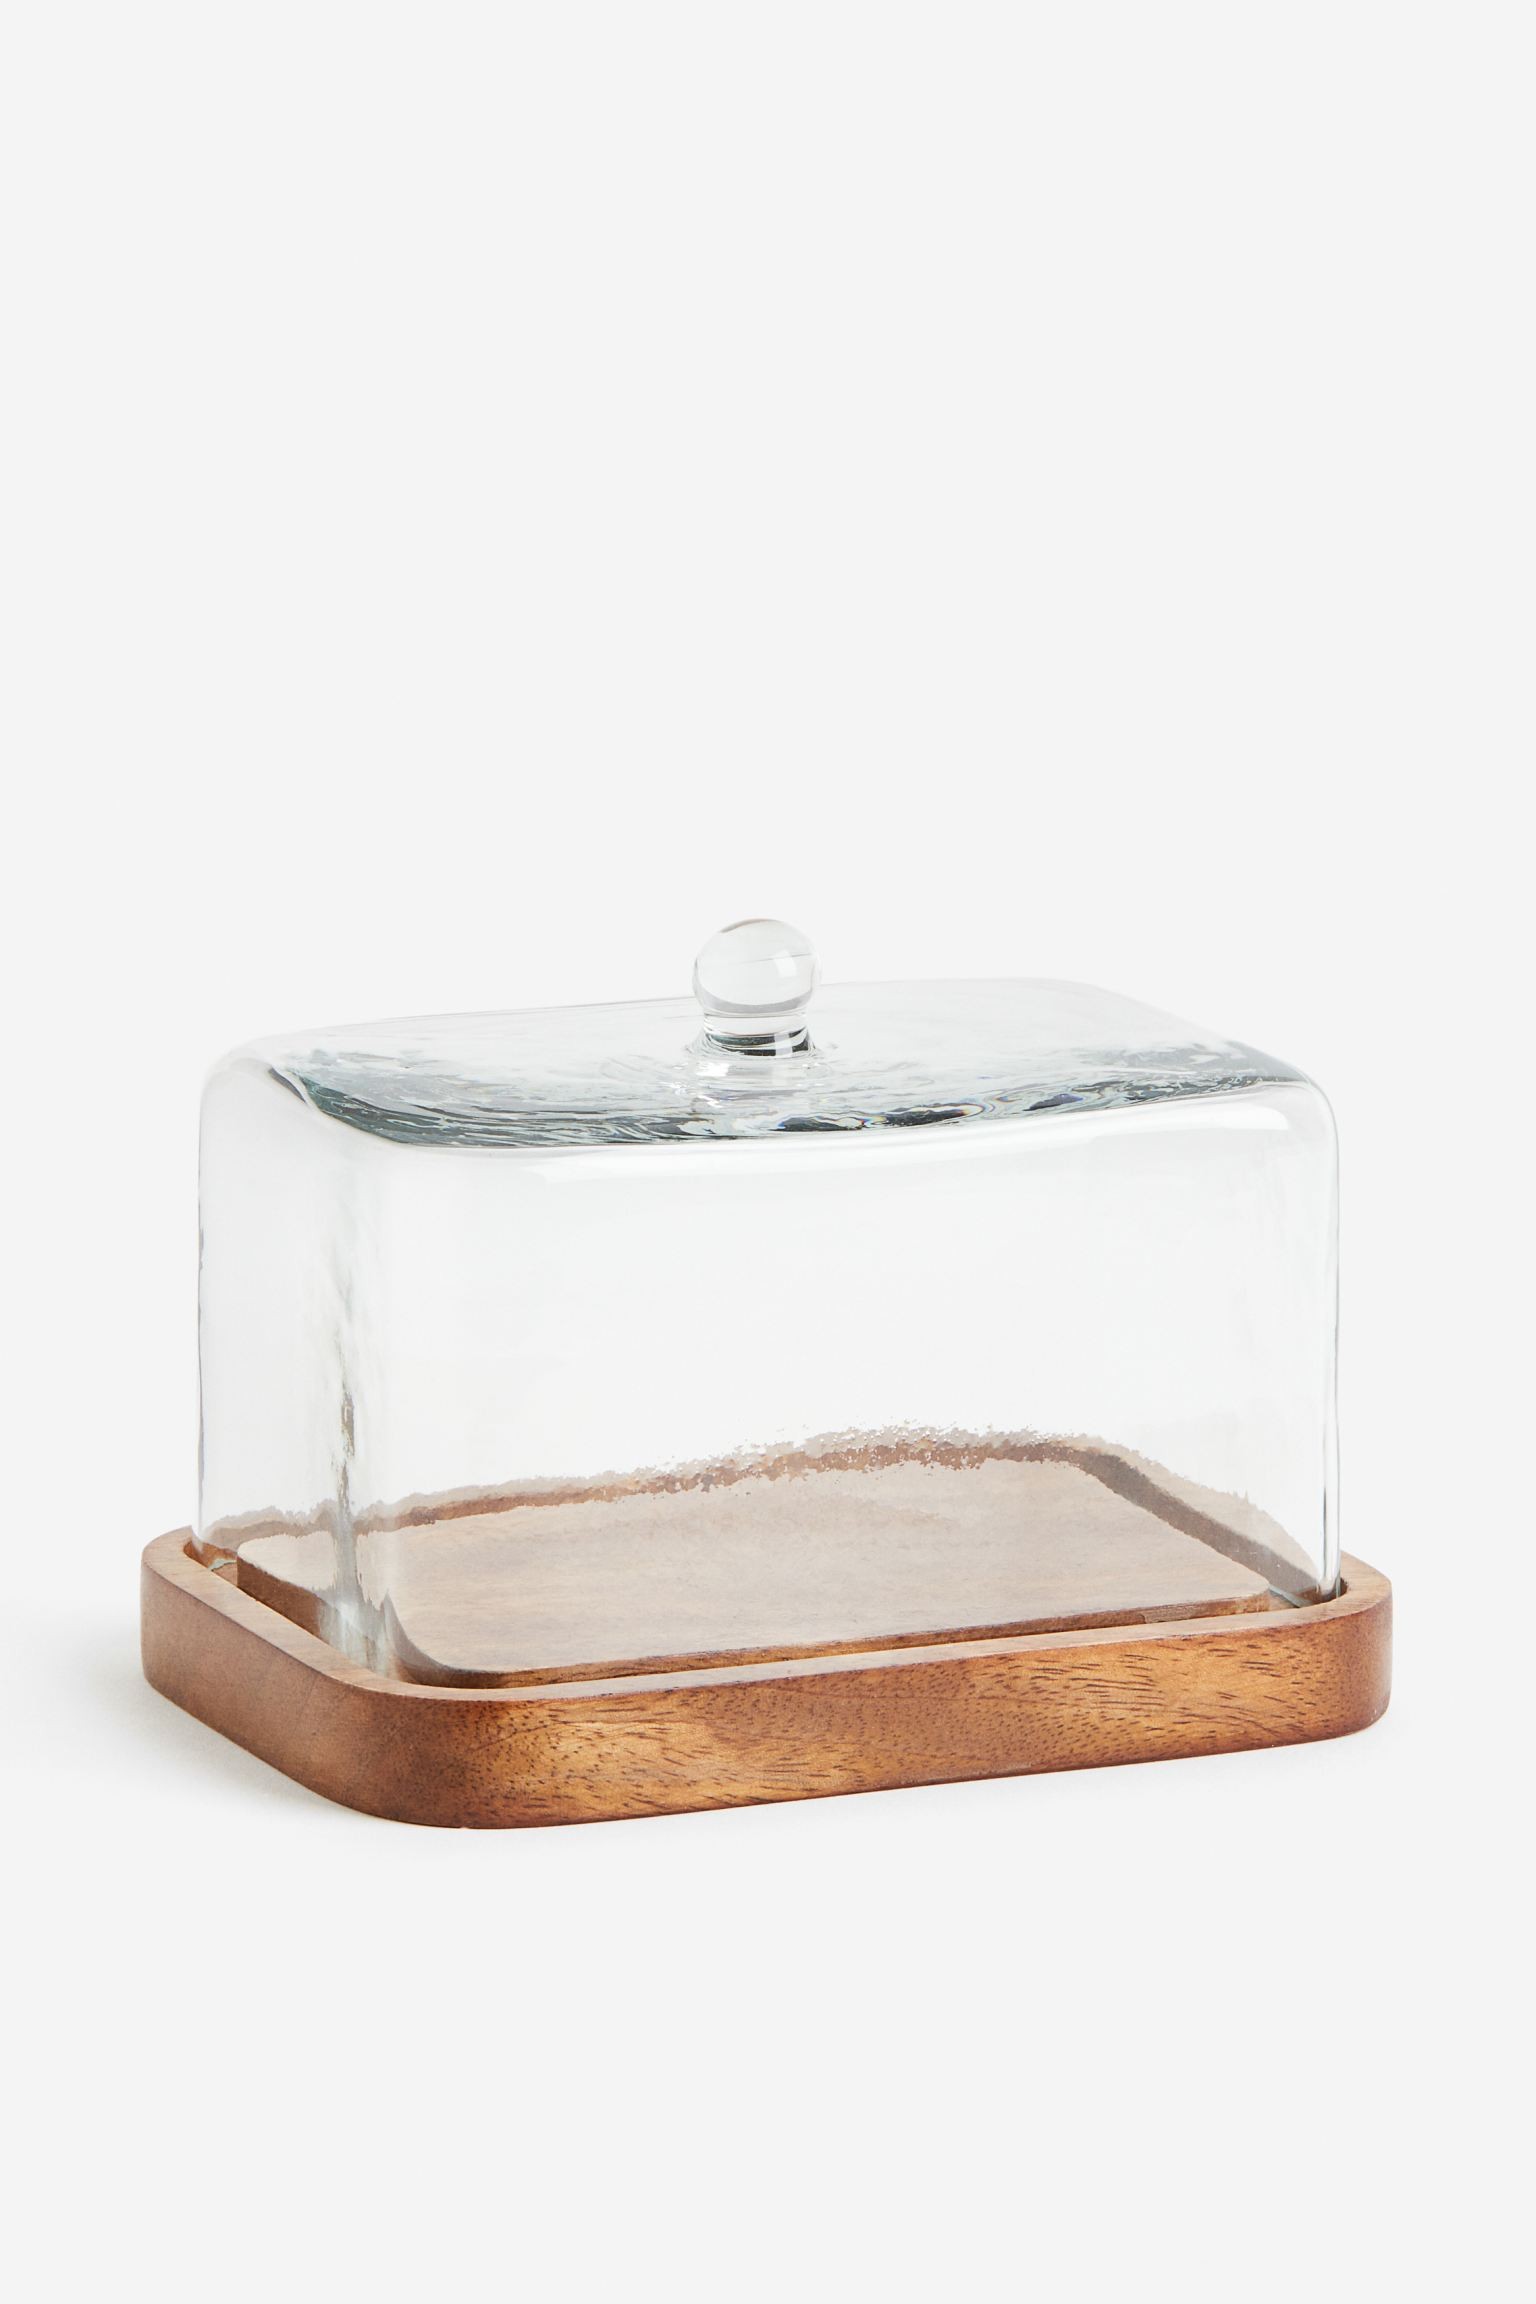 H&M Home Масленка со стеклянной крышкой, Прозрачное стекло/Коричневый 0913927001 | 0913927001